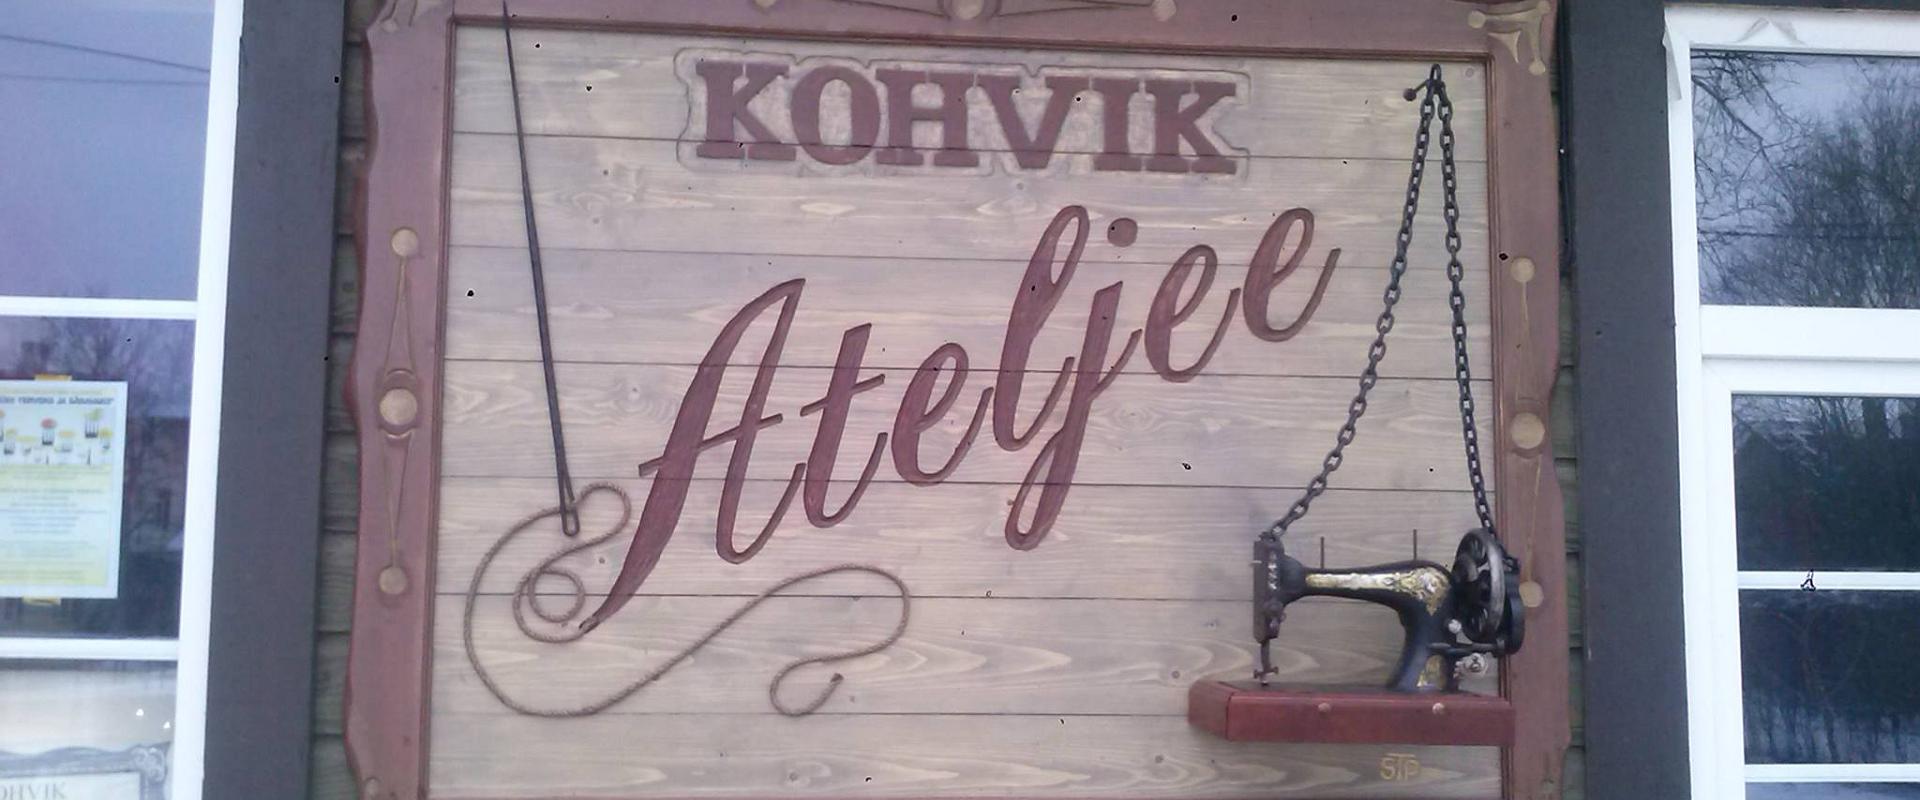 Kohvik "Ateljee"